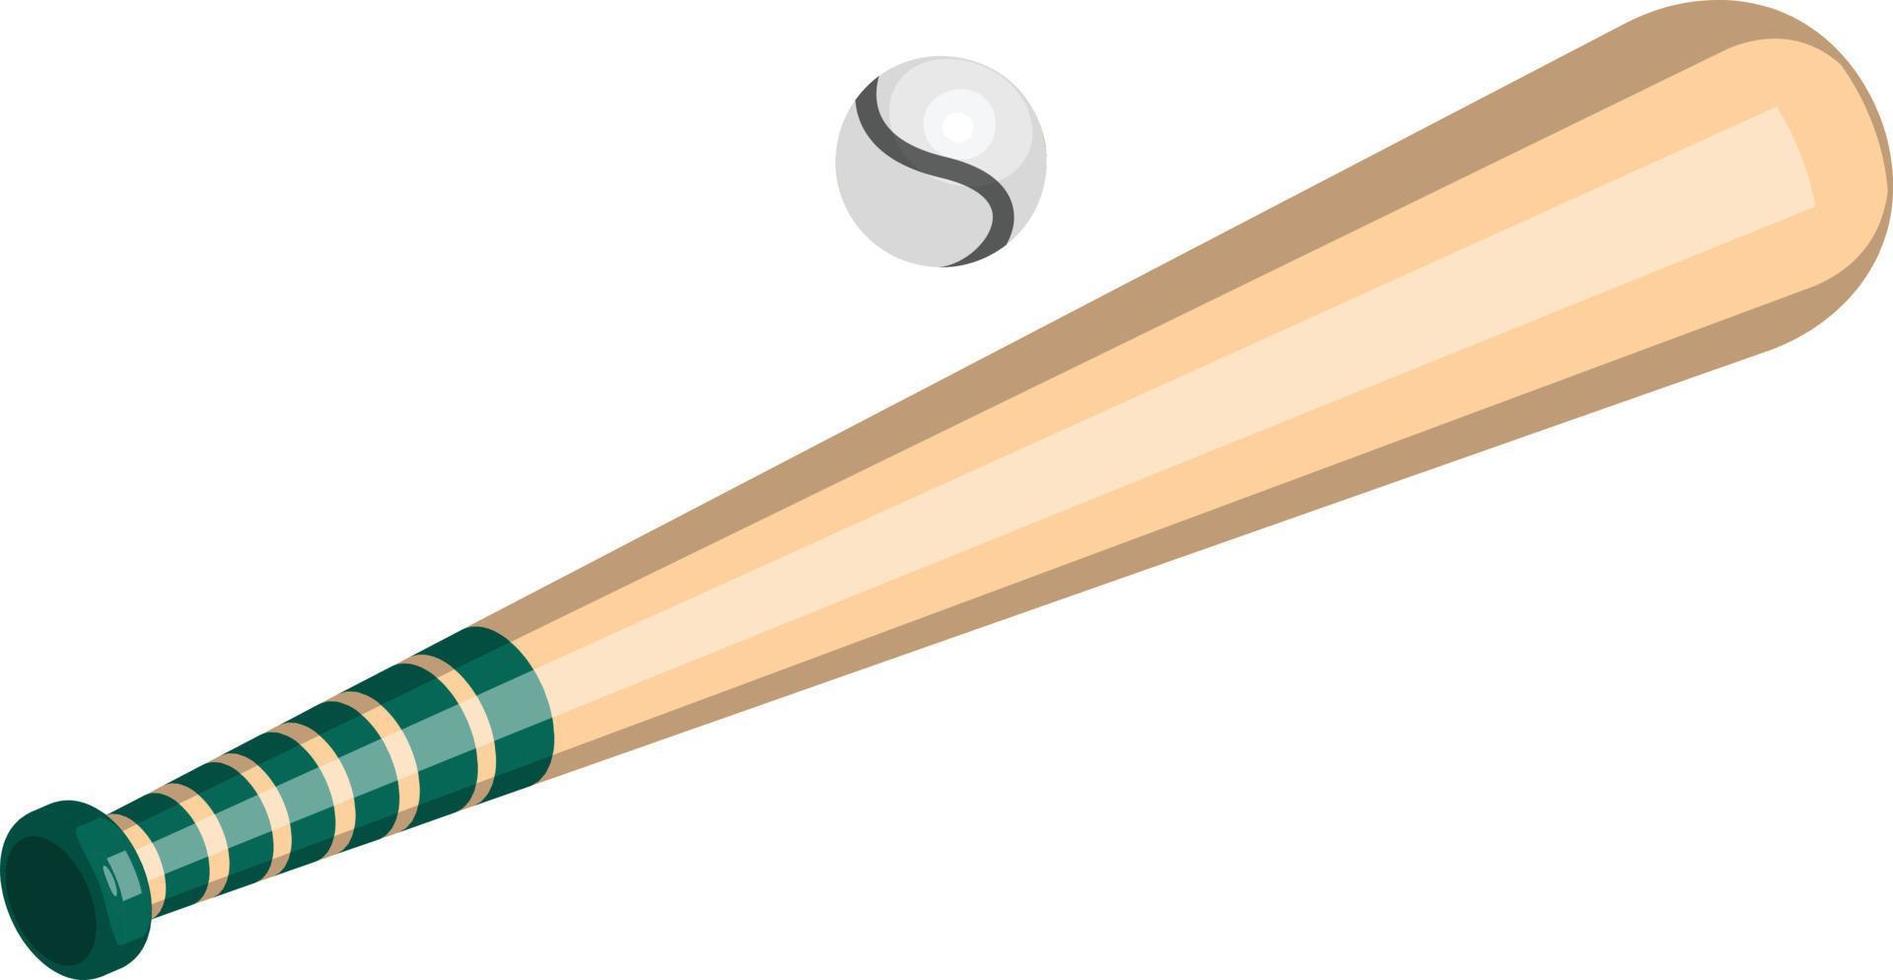 baseboll illustration i 3d isometrisk stil vektor